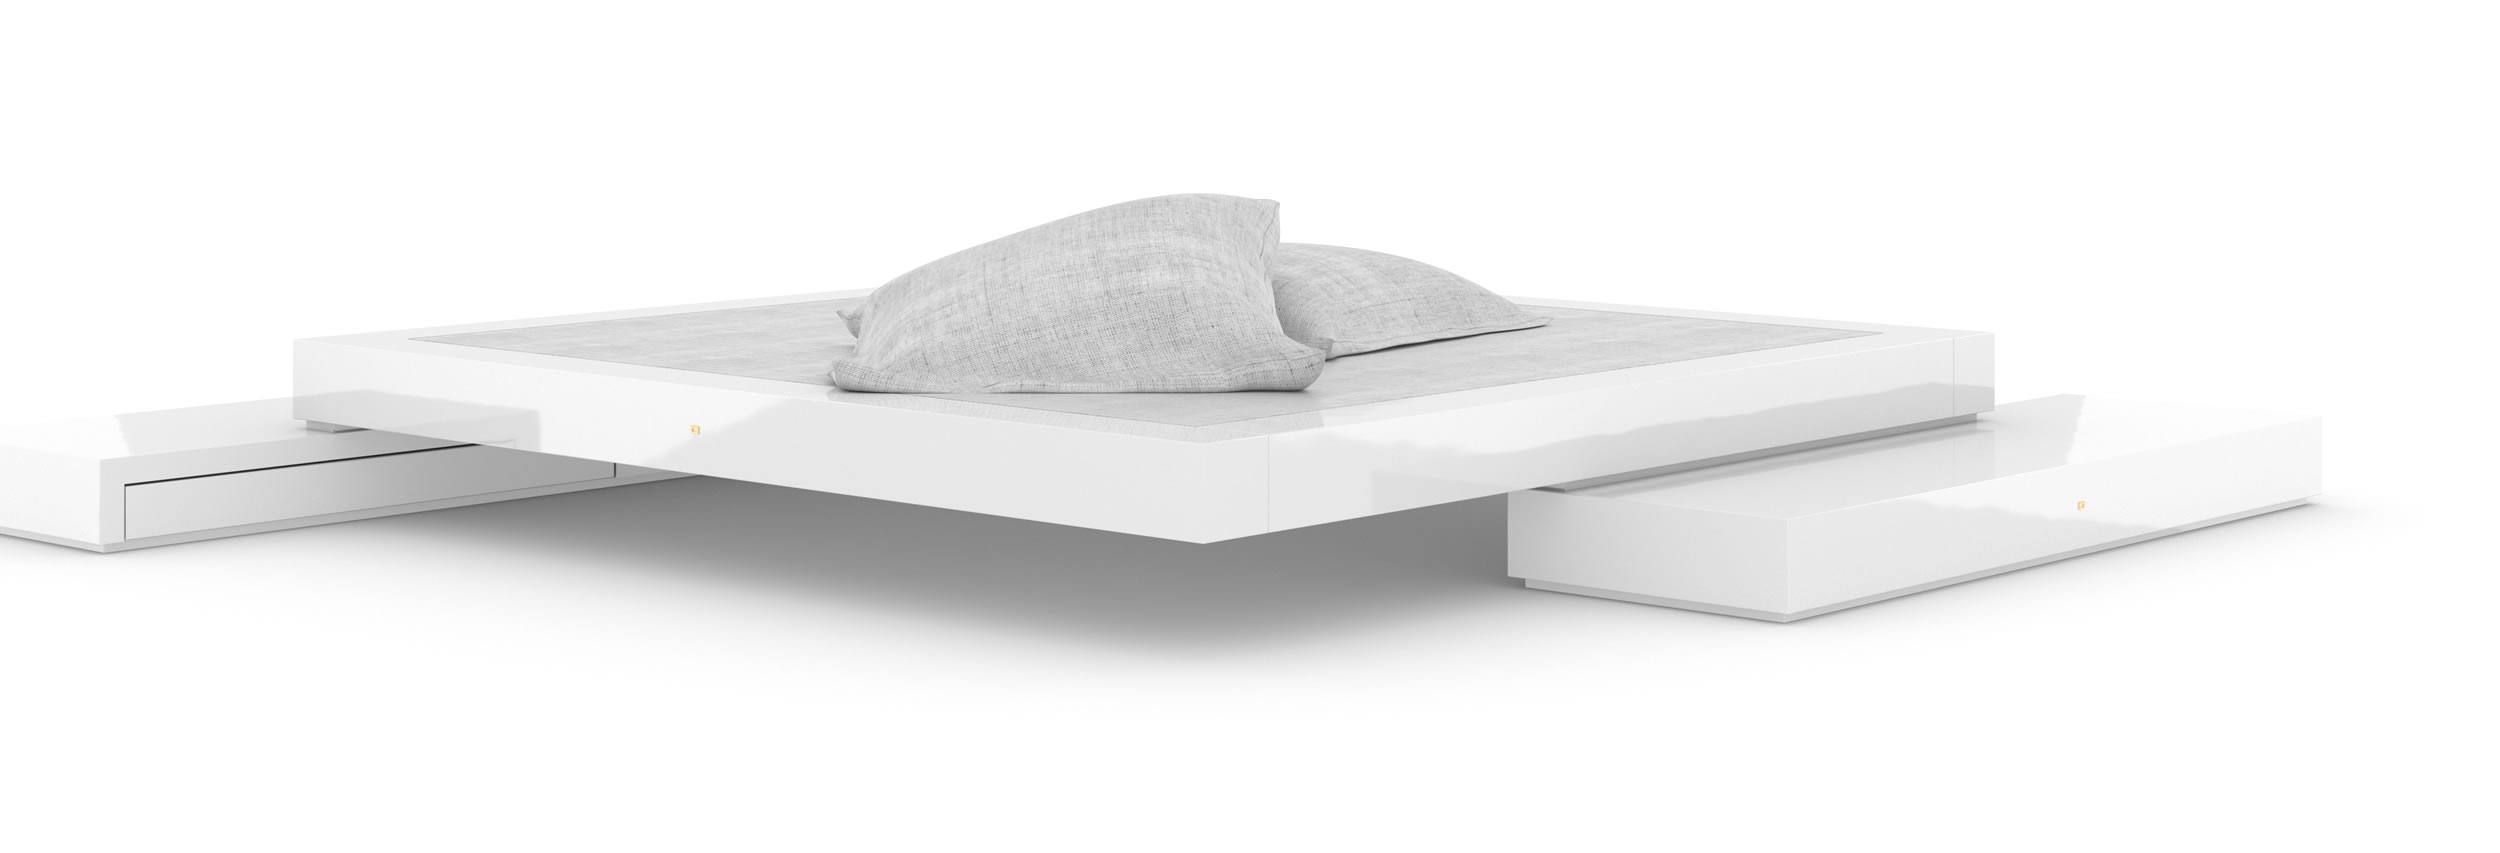 Design Bett Sideboards Weiss Glaenzend Premium Handgefertigt Design Elegant InteriorFELIX SCHWAKE